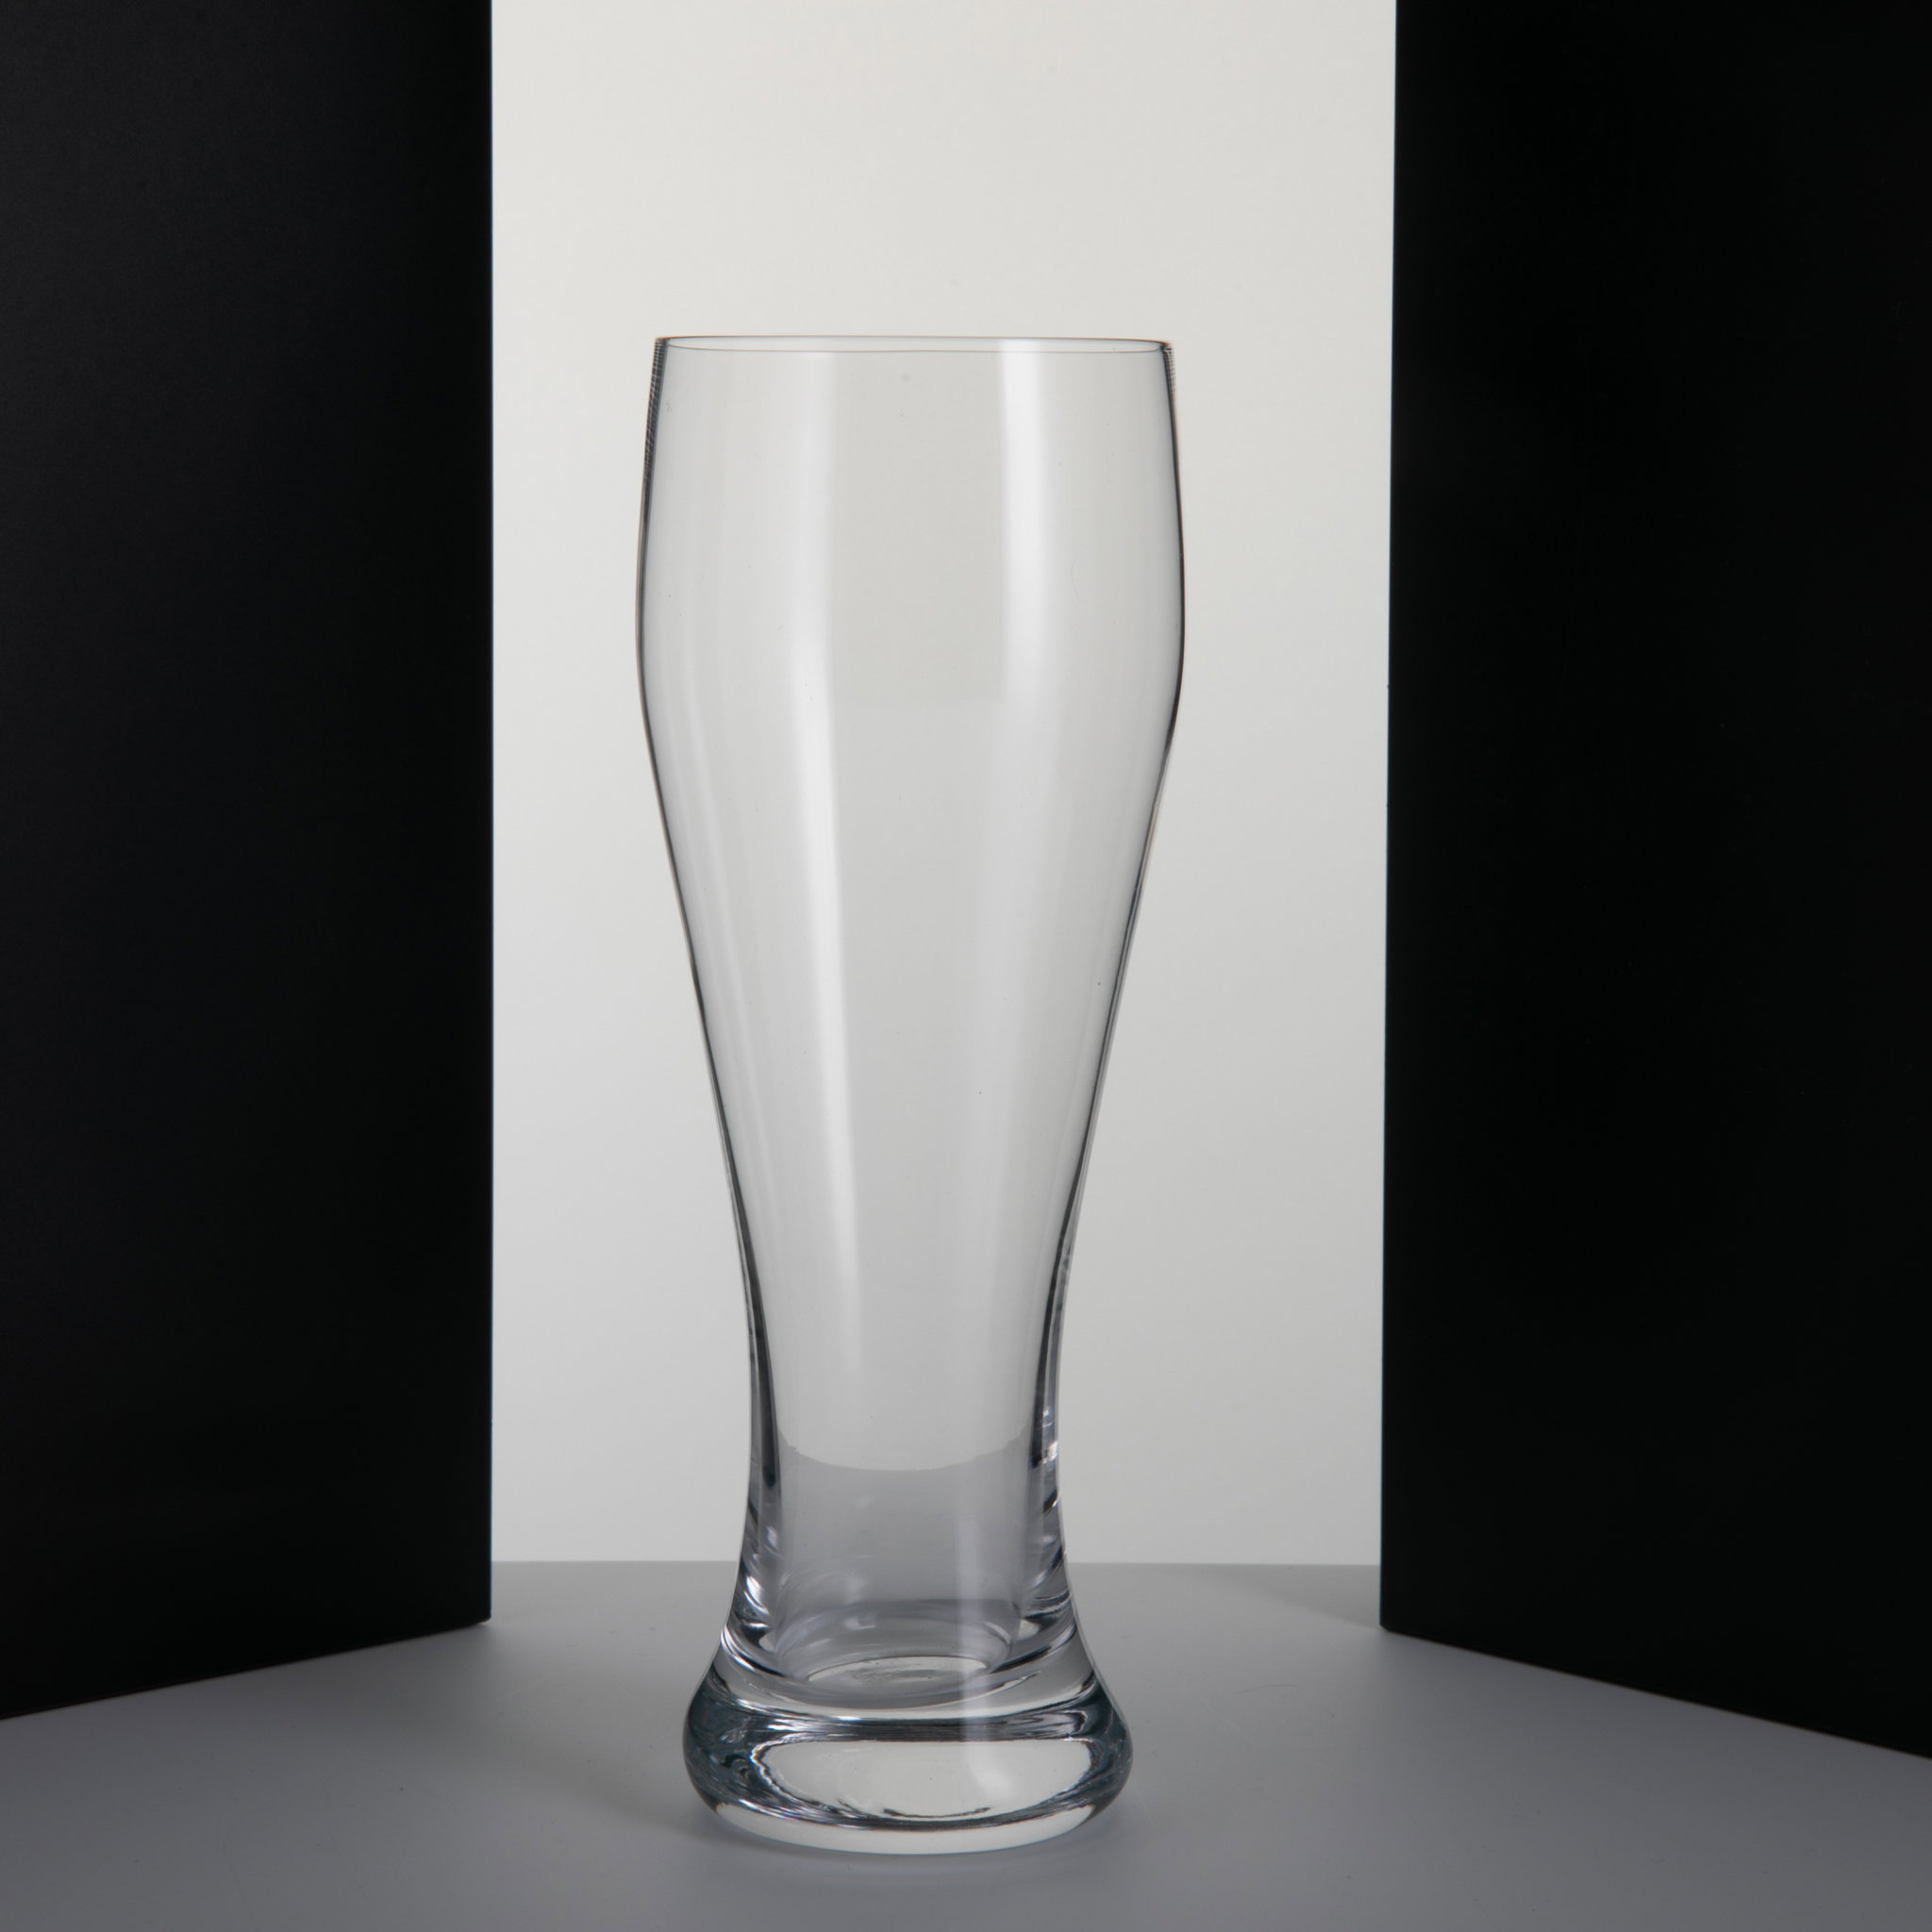 18 oz. Promotional Pilsner Glass4